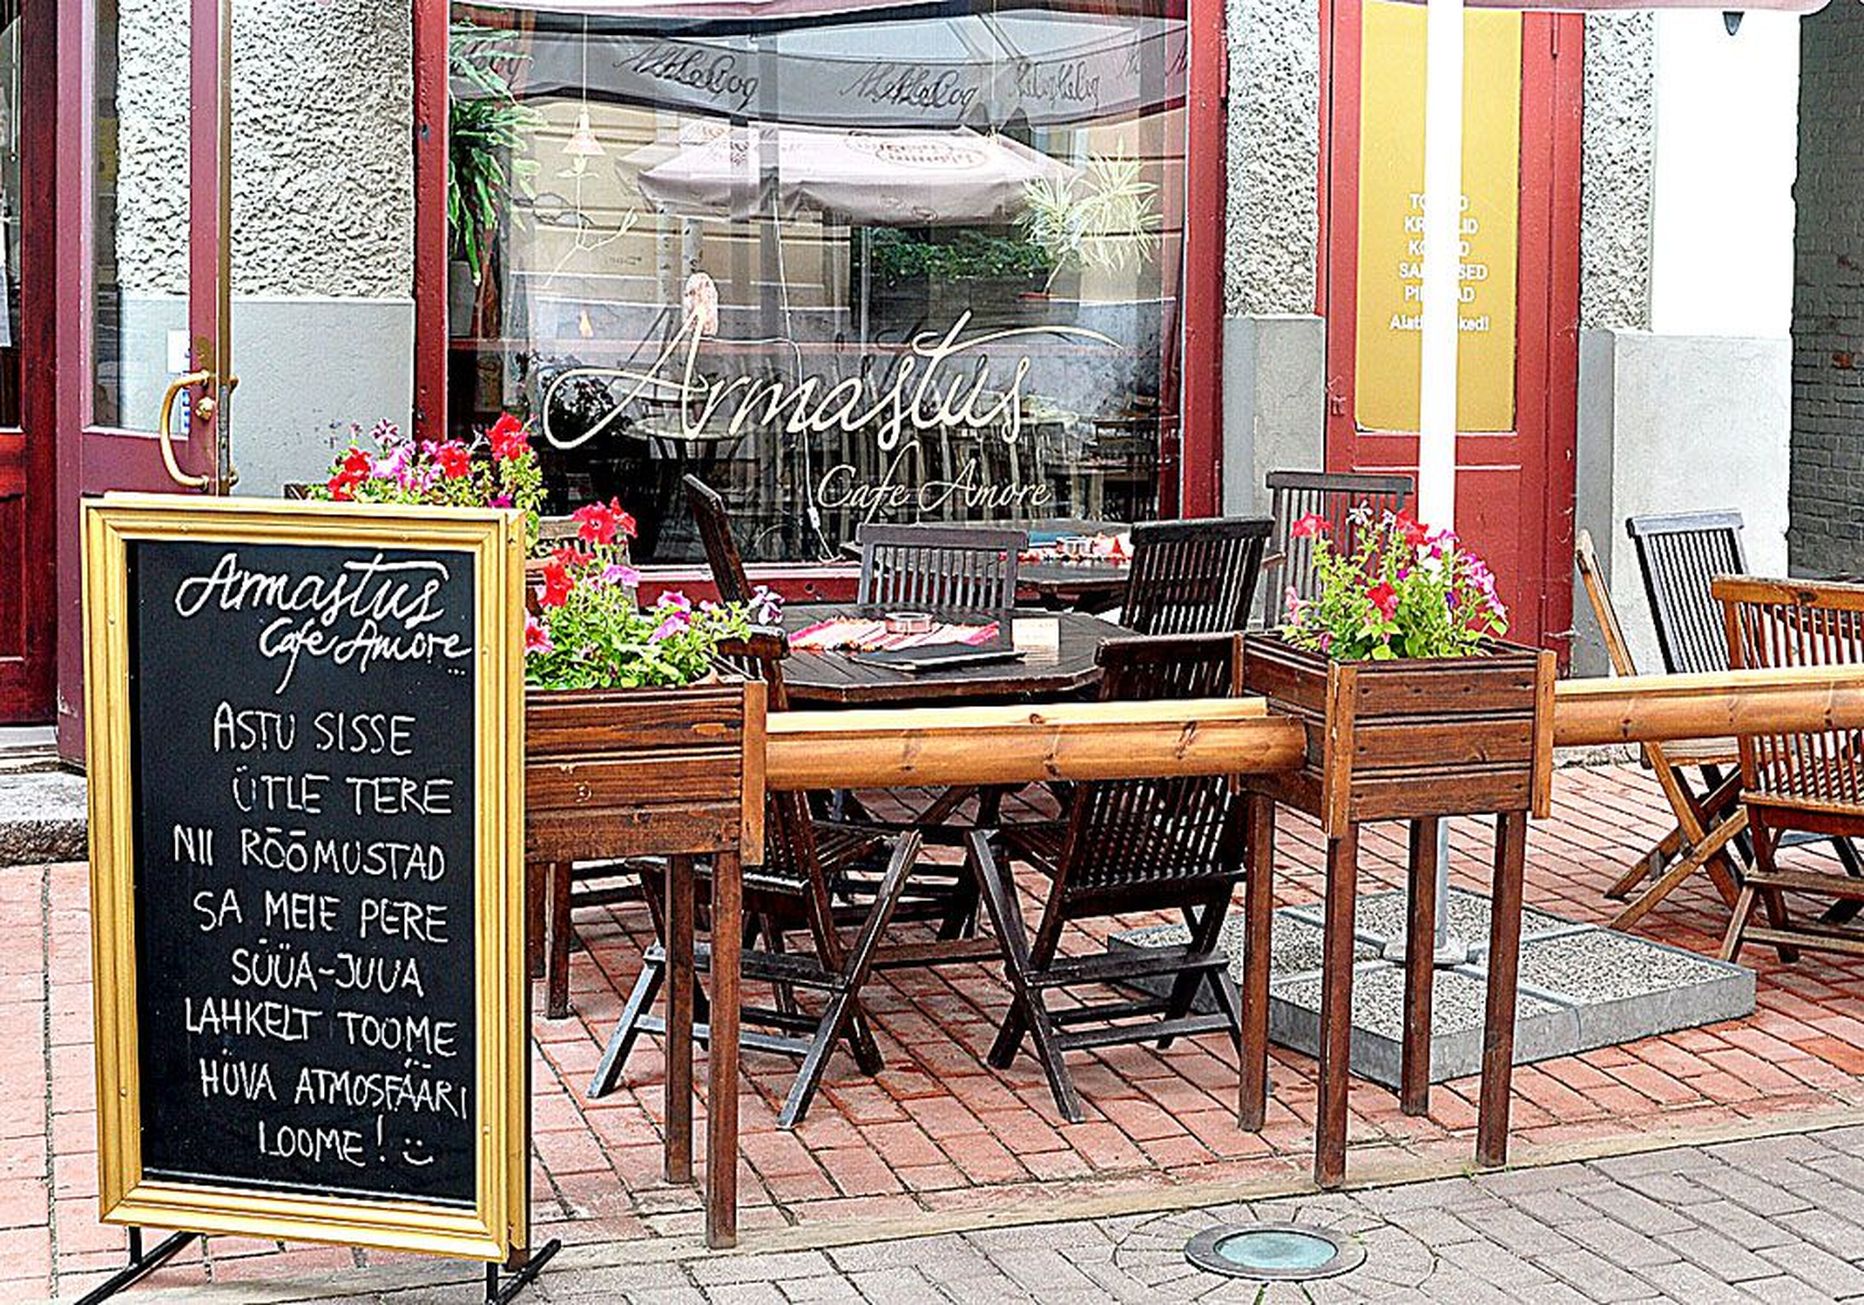 Rüütli tänaval asuva Balkani lauad, millel on ka restoranile viitavad sildid, seisavad kohviku Armastus ühe akna all.